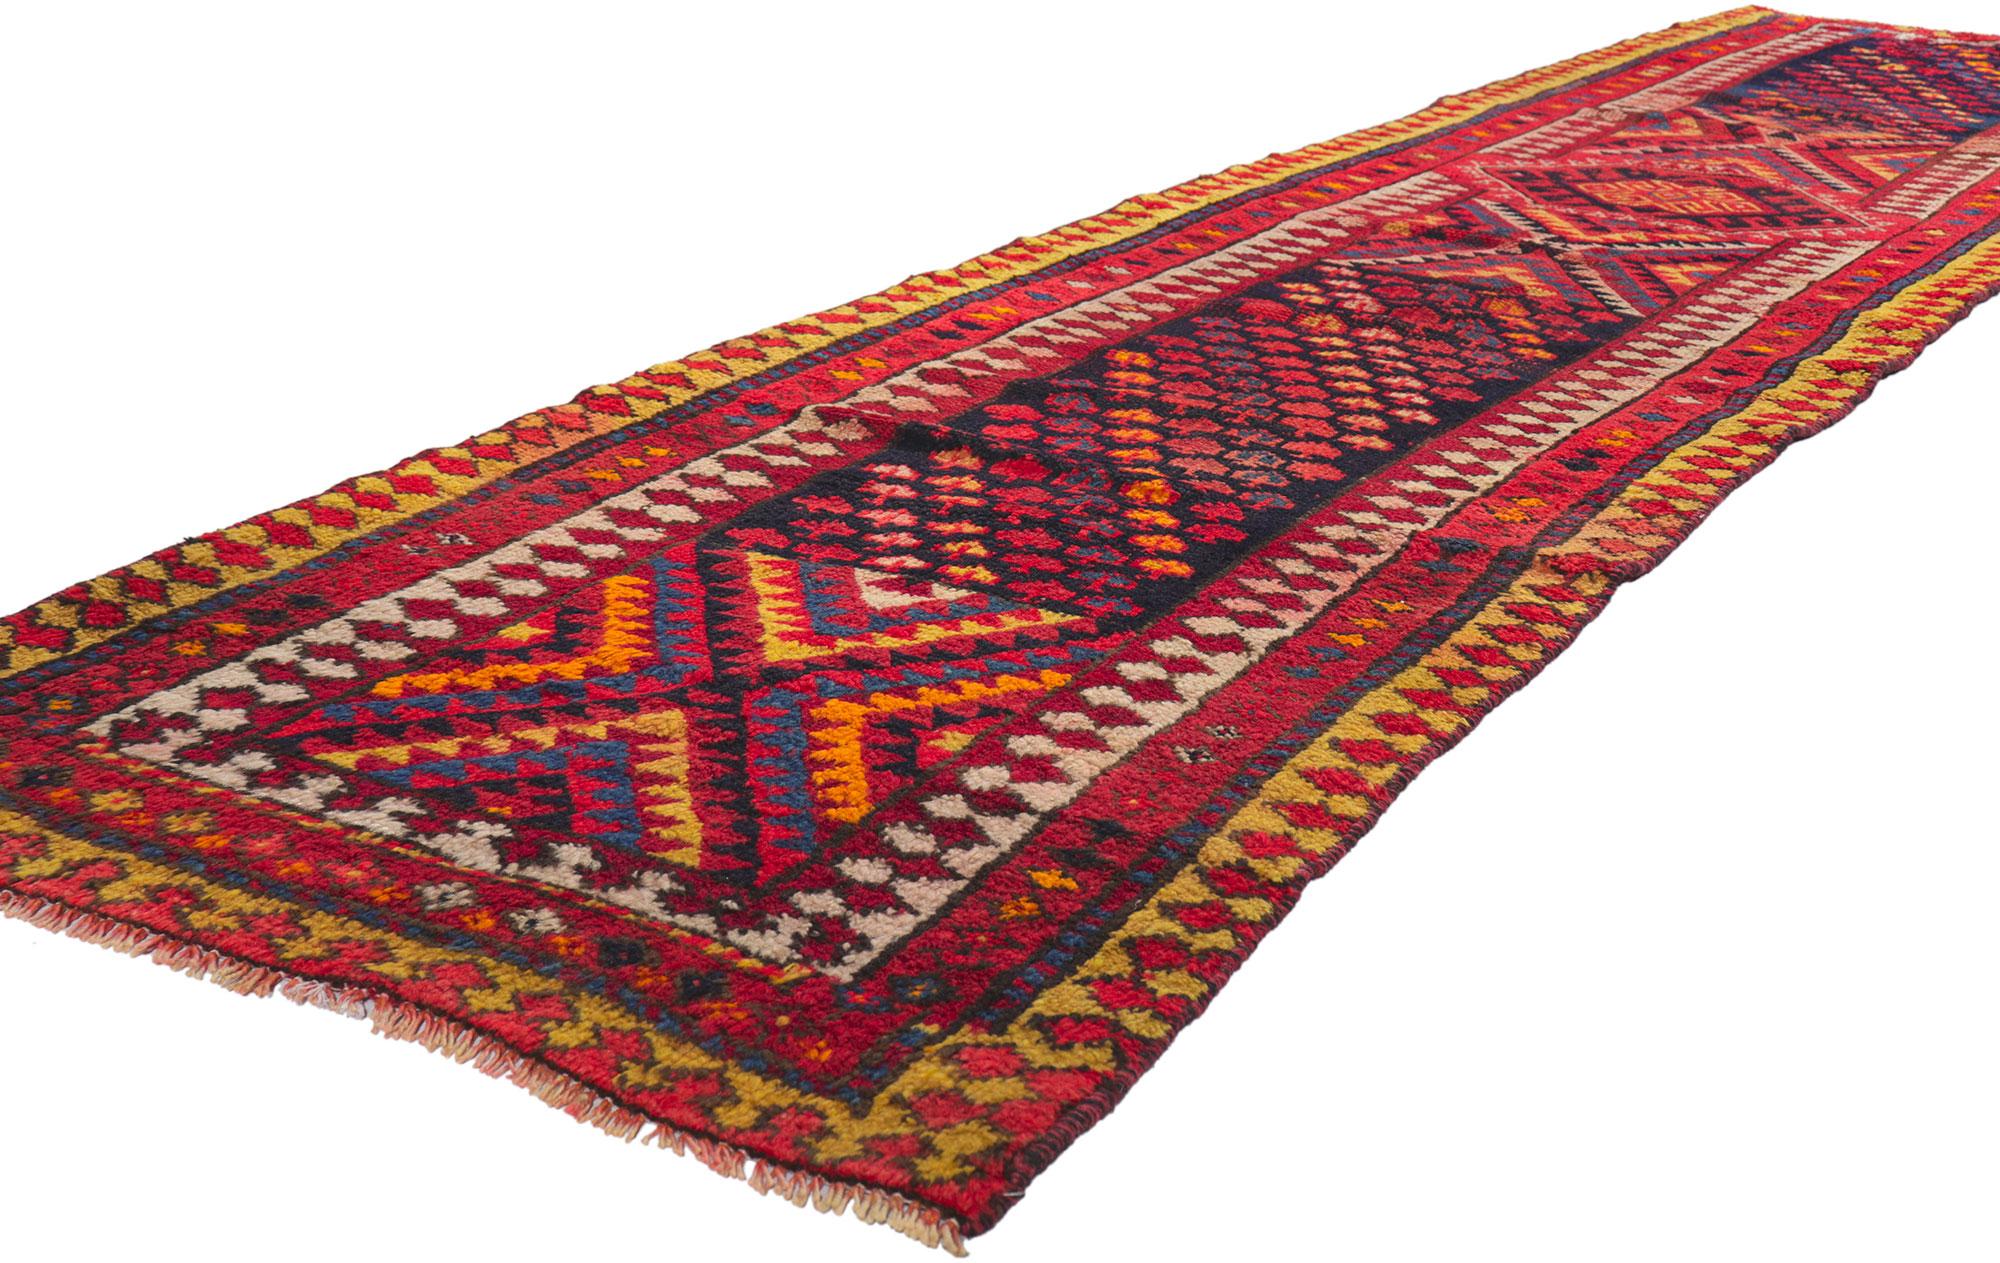 Plein de petits détails et de charme nomade, ce chemin de table en laine perse vintage Shiraz noué à la main est une vision captivante de la beauté tissée. Le design tribal accrocheur et les couleurs vives de ce tapis vintage Shiraz se combinent